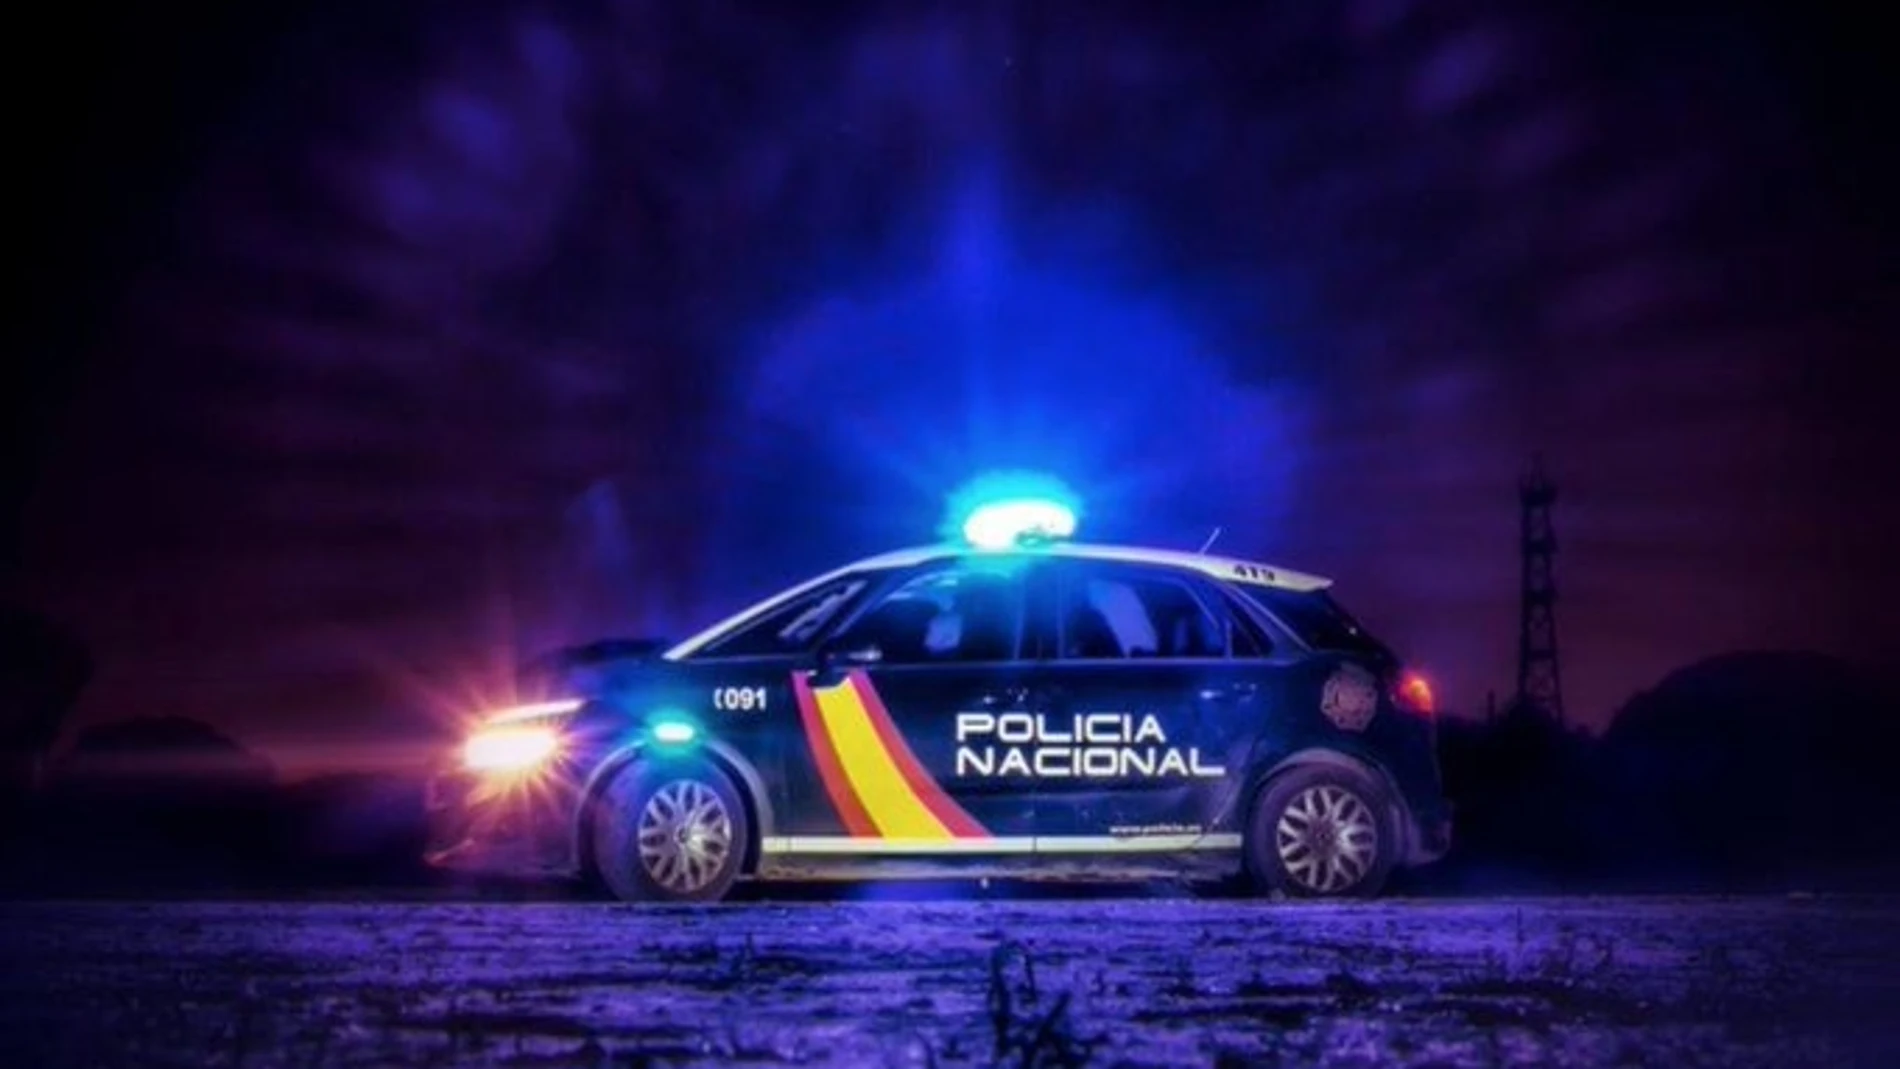 Foto de archivo de un coche de la Policía Nacional